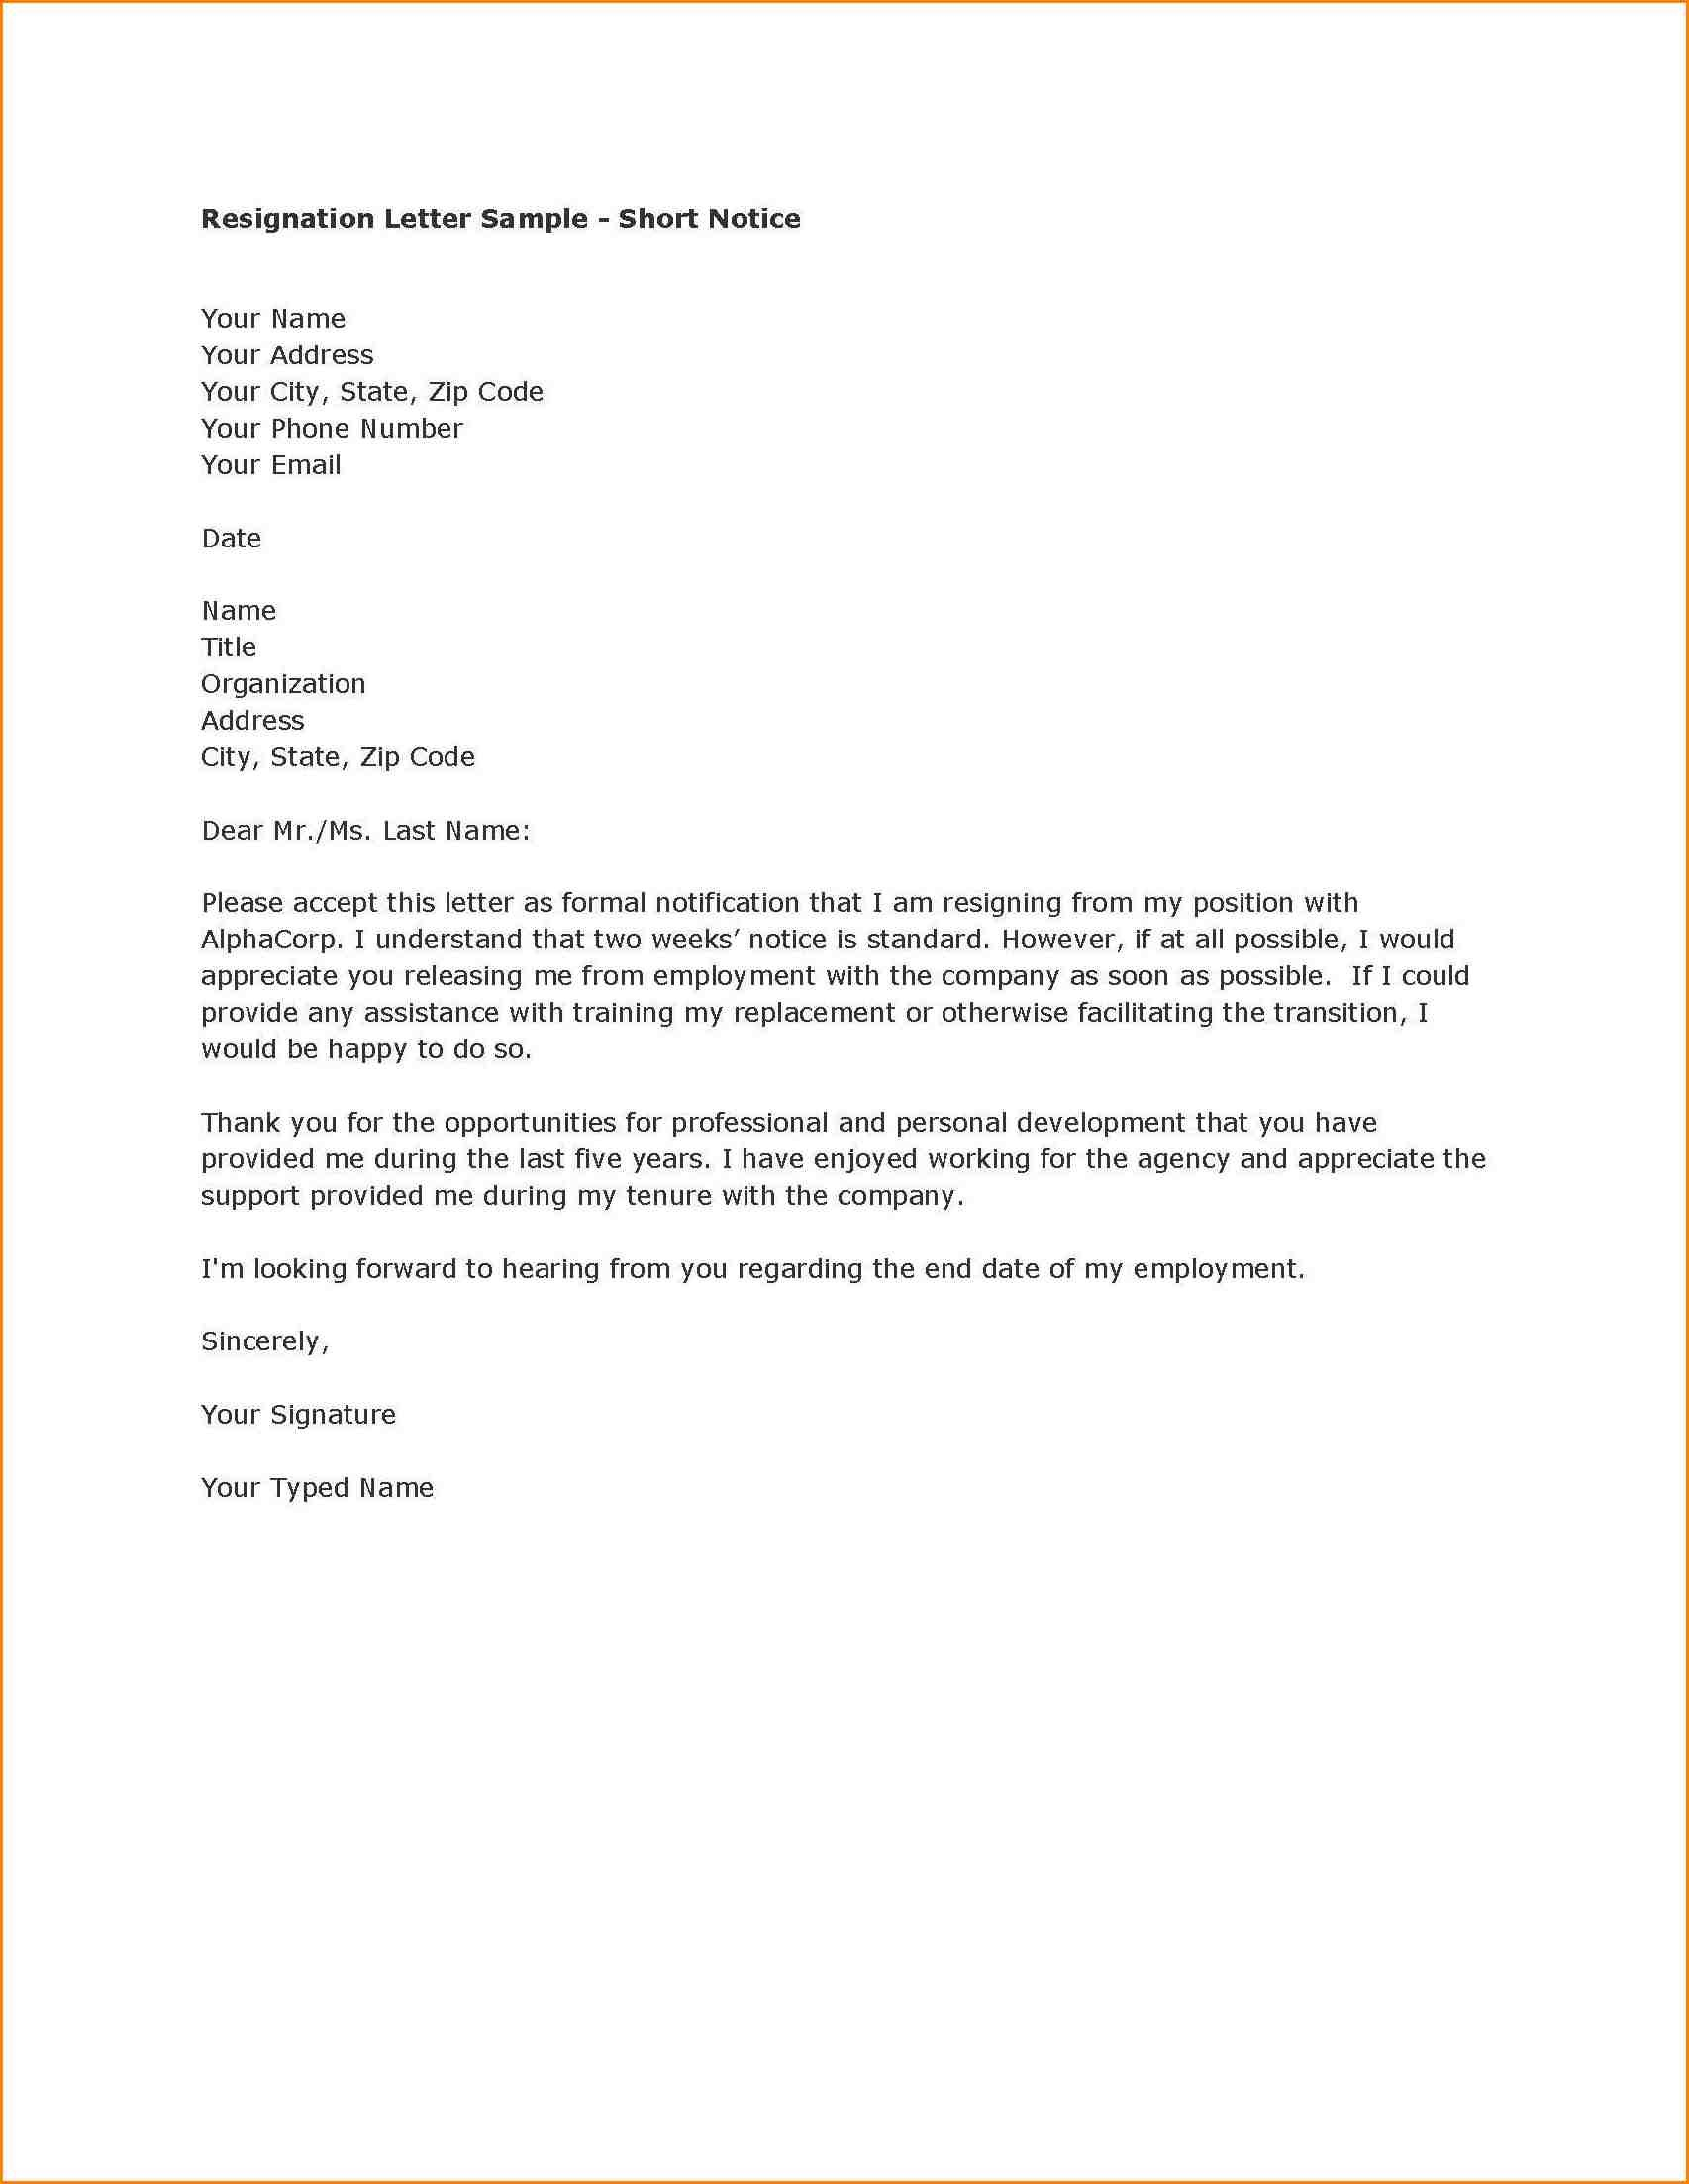 Short Resignation Letter Template - Resignation Letter format Short Notice Period New Resignation Letter